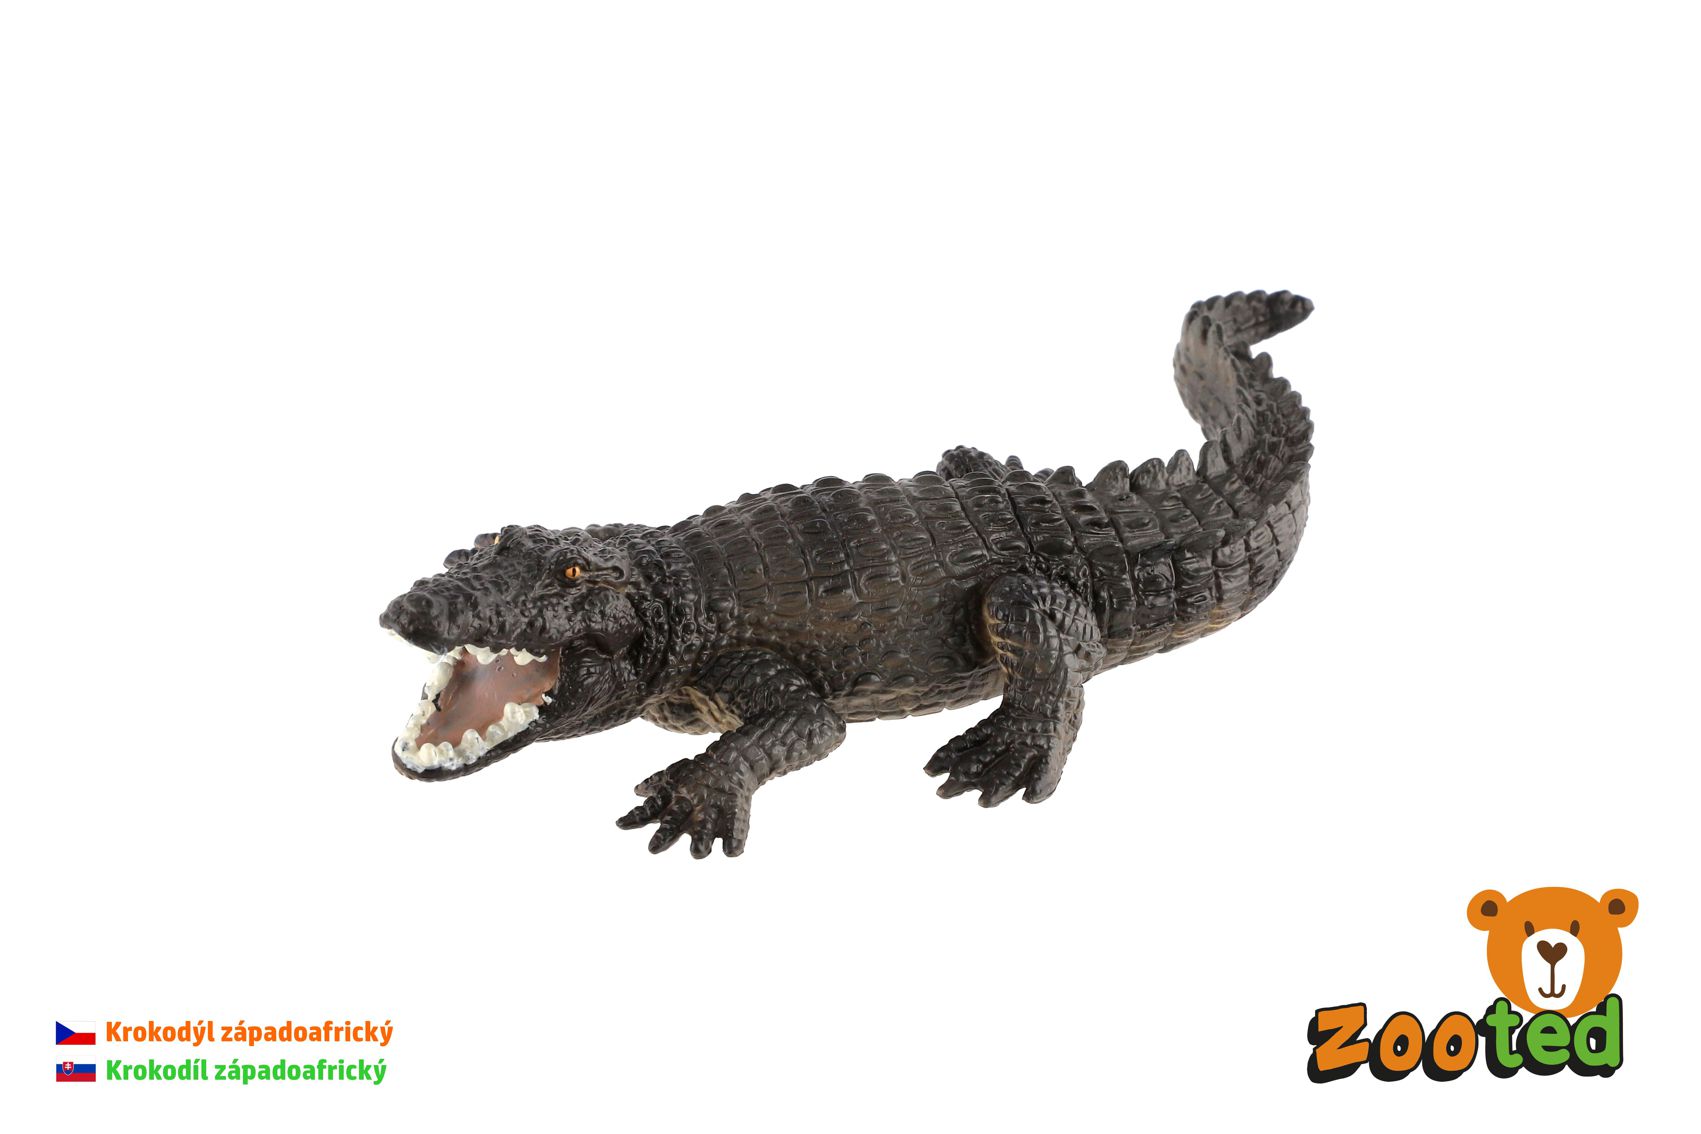 ZOOted Krokodýl západoafrický zooted plast 17cm v sáčku